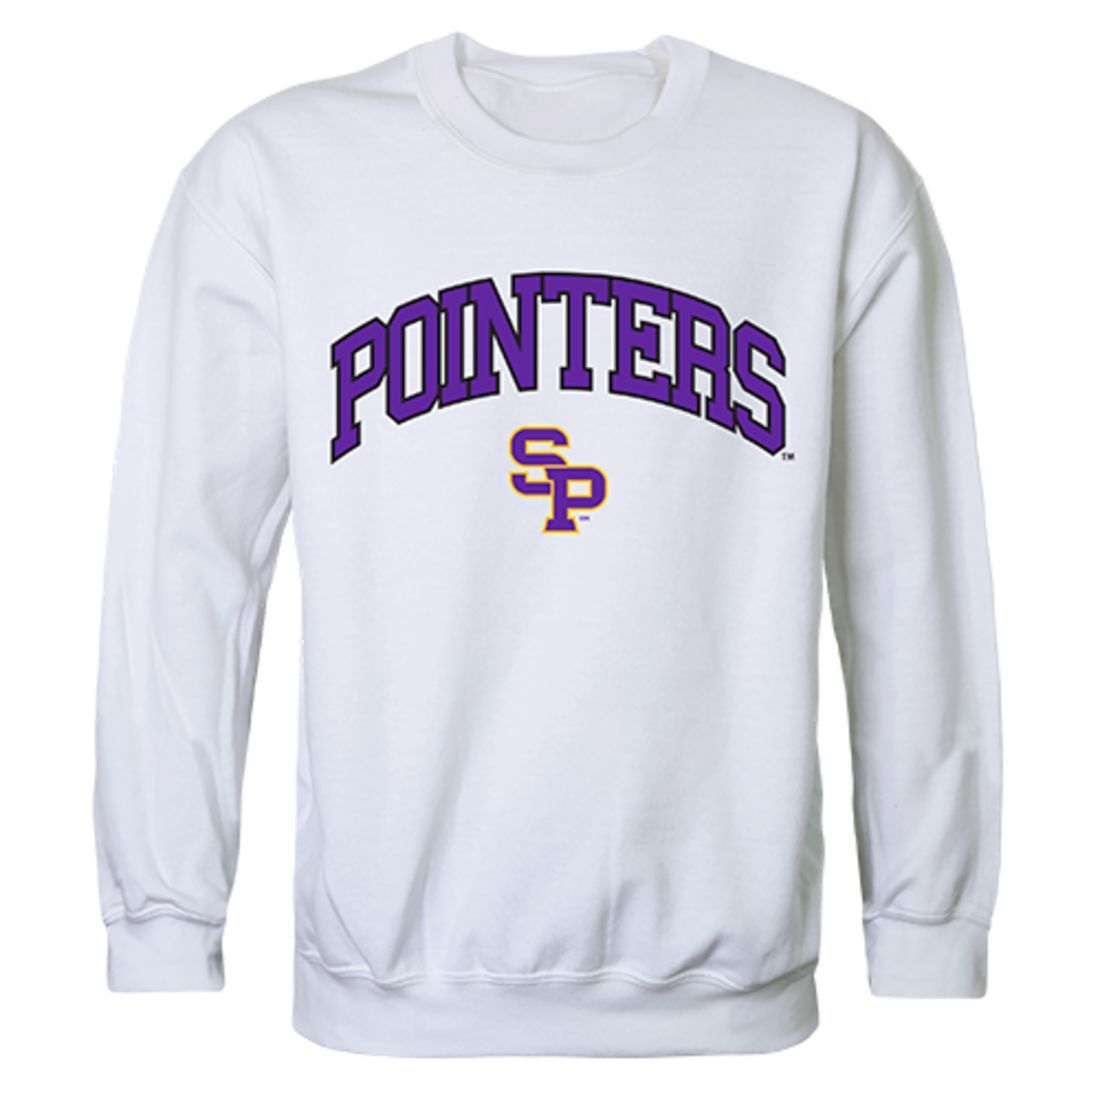 UWSP University of Wisconsin Stevens Point Campus Crewneck Pullover Sweatshirt Sweater White-Campus-Wardrobe